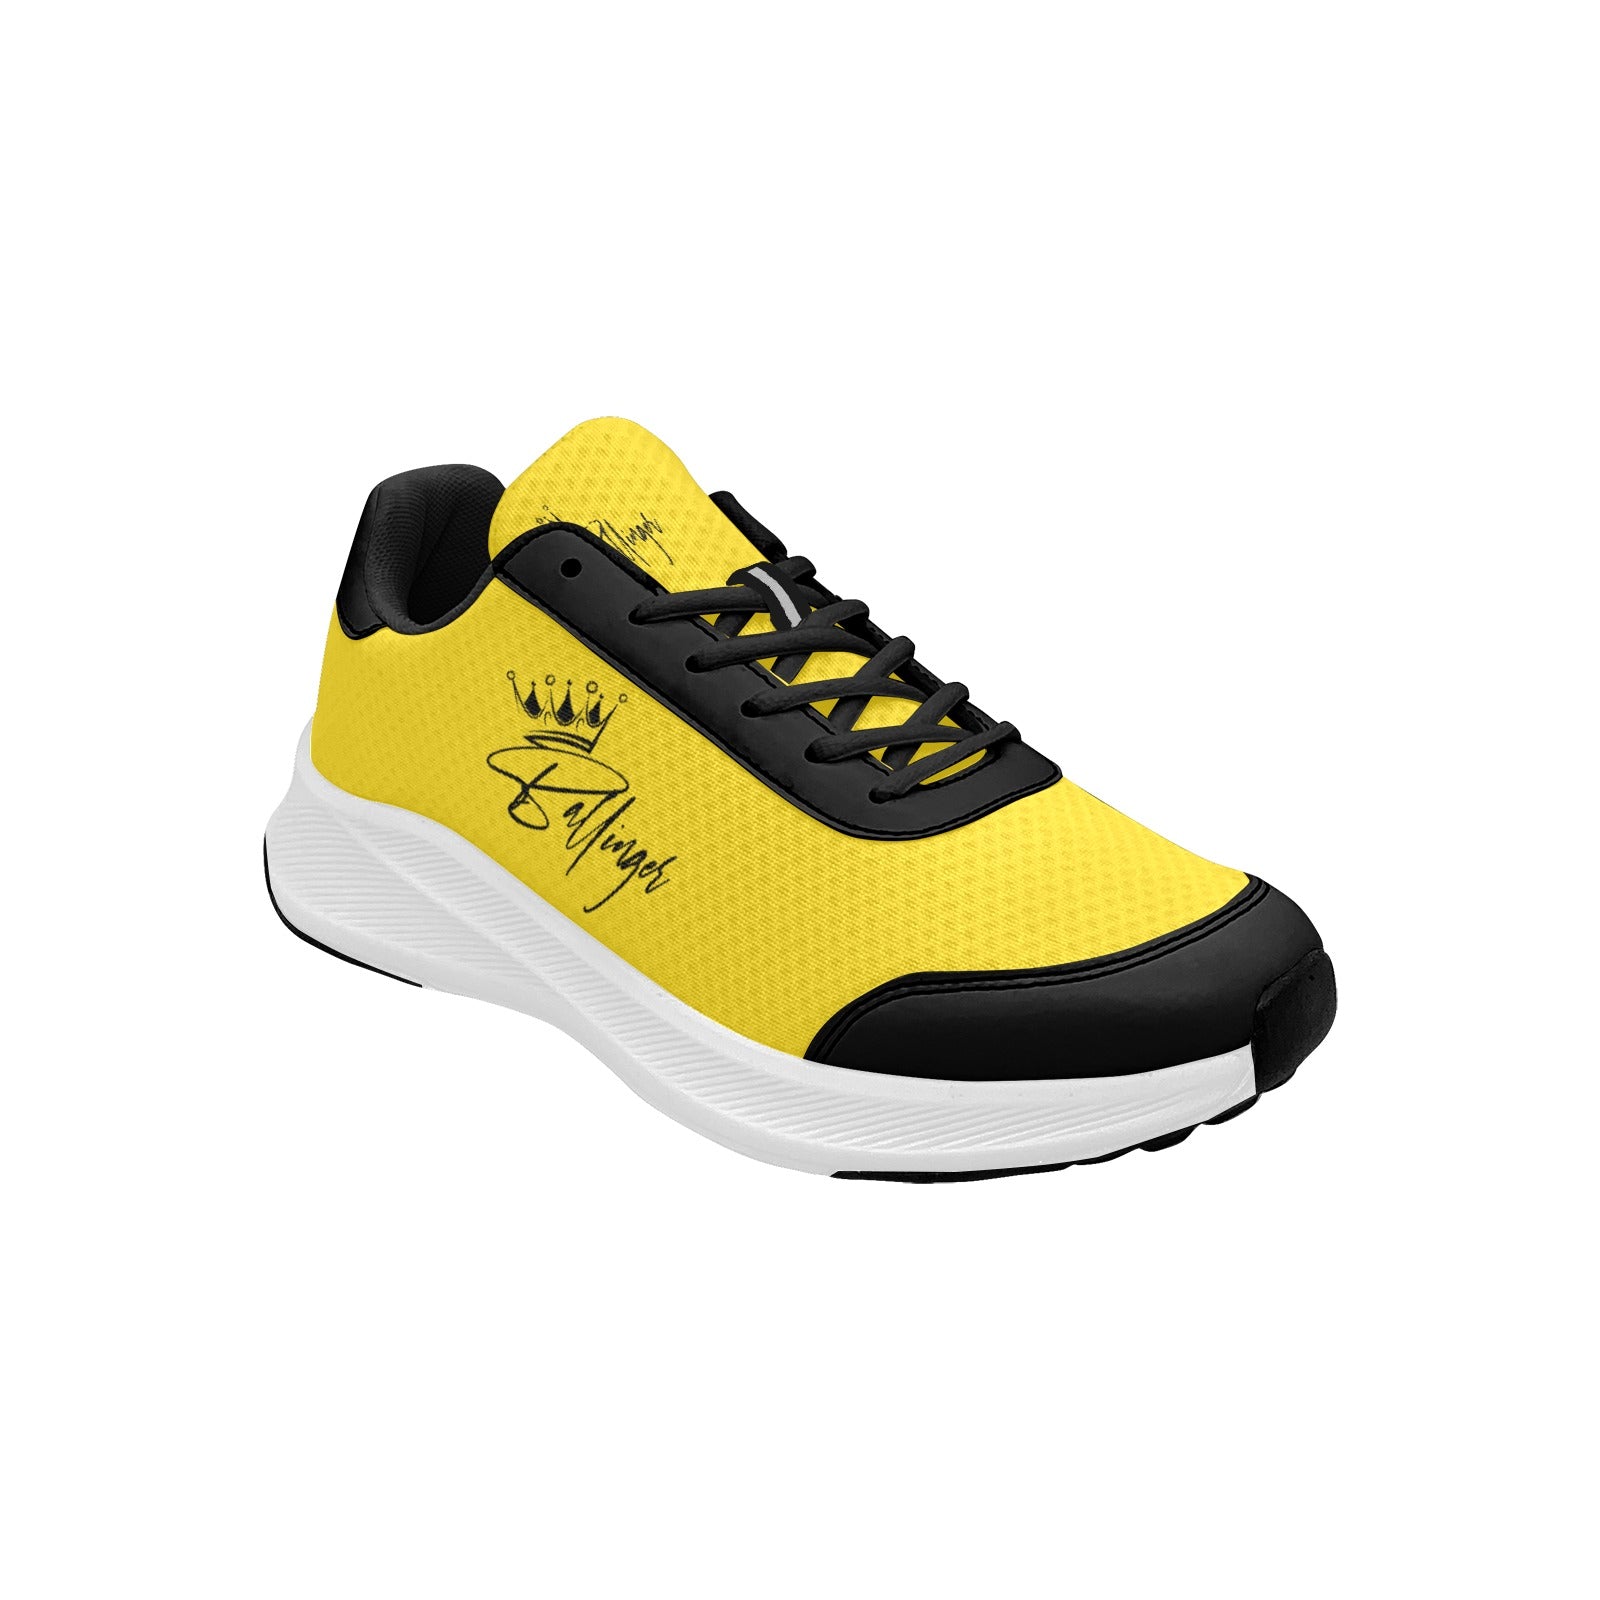 Ballinger Signature Design Mudguard Running Shoes